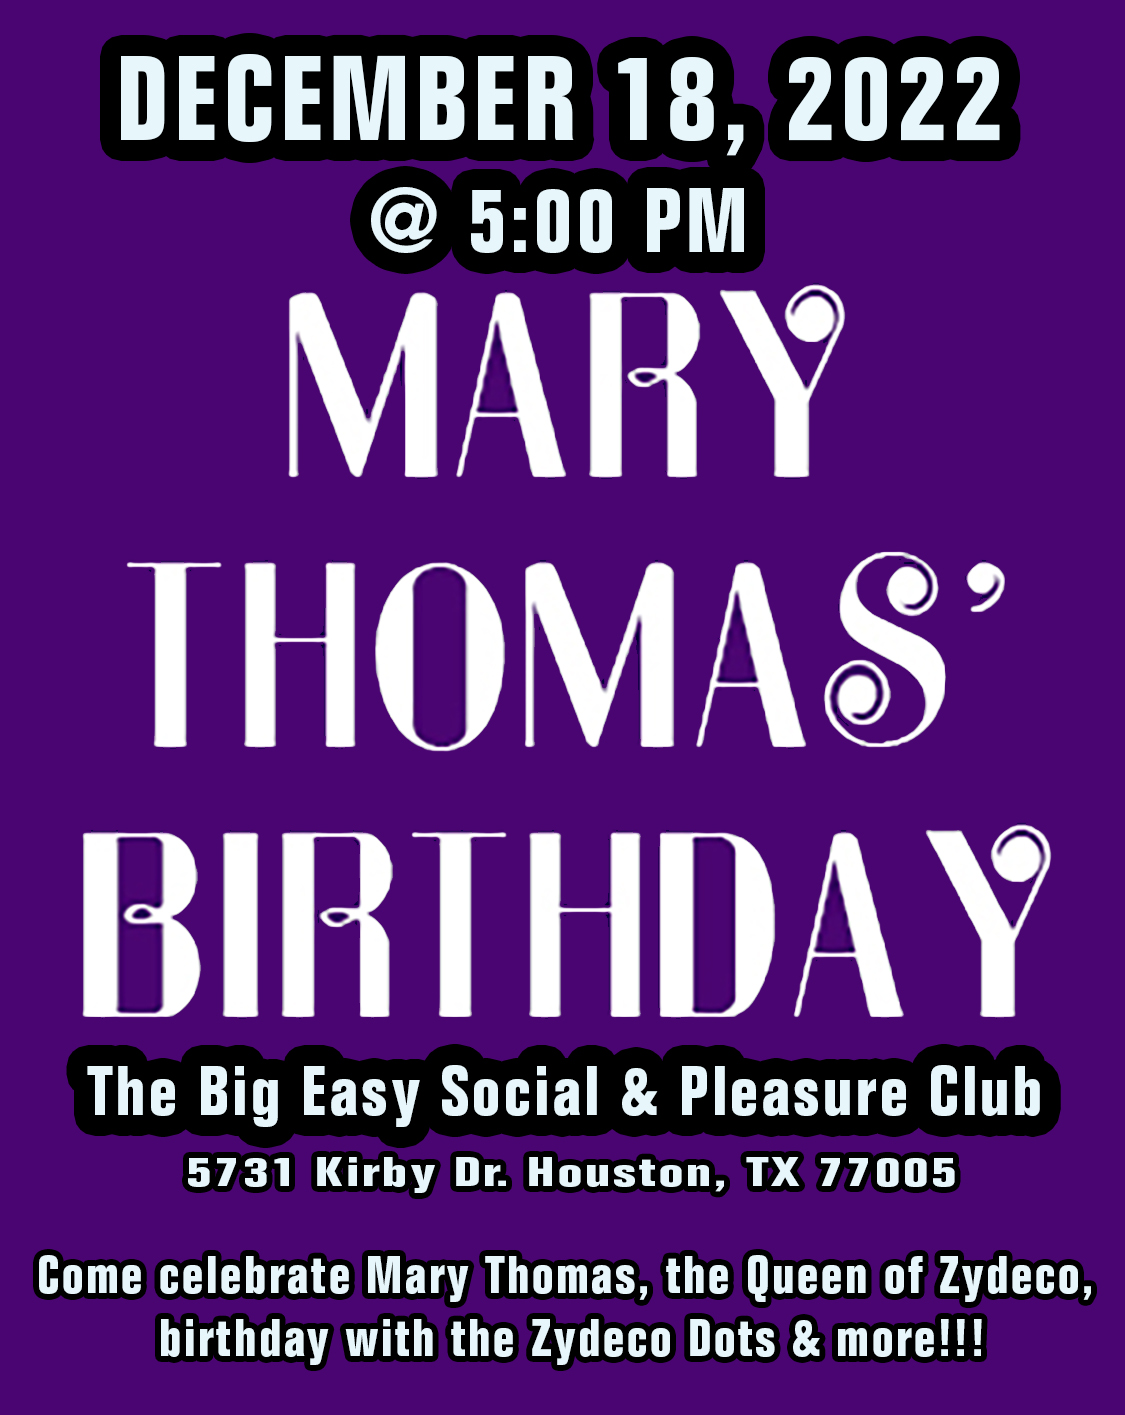 Mary Thomas' Birthday @ The Big Easy Social & Pleasure Club